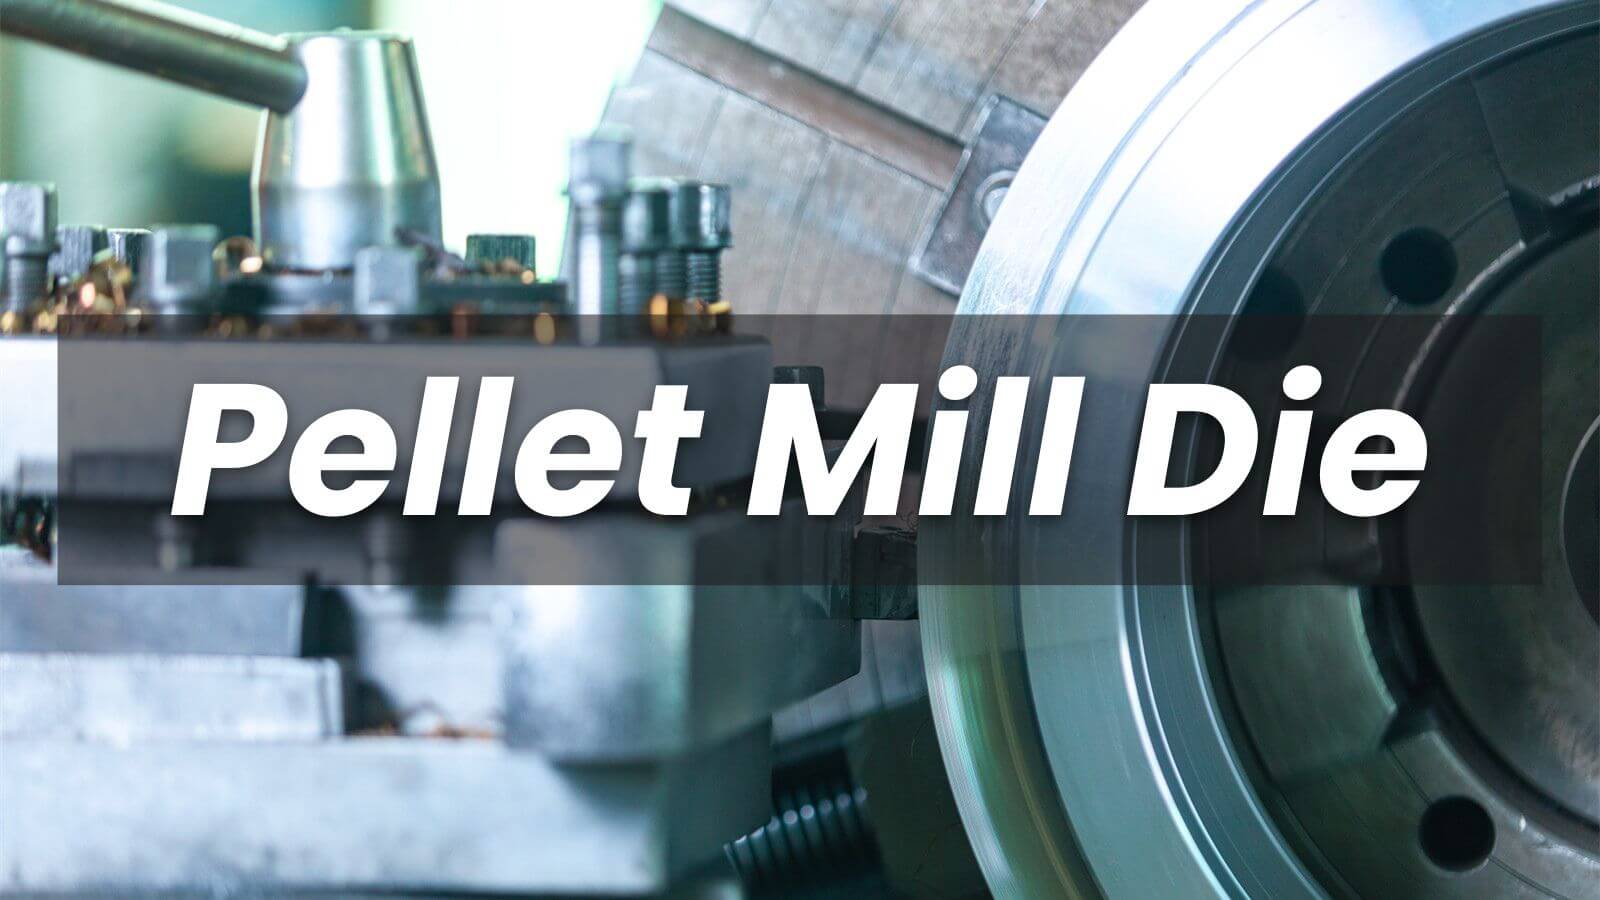 Pellet Mill Die in Egypt